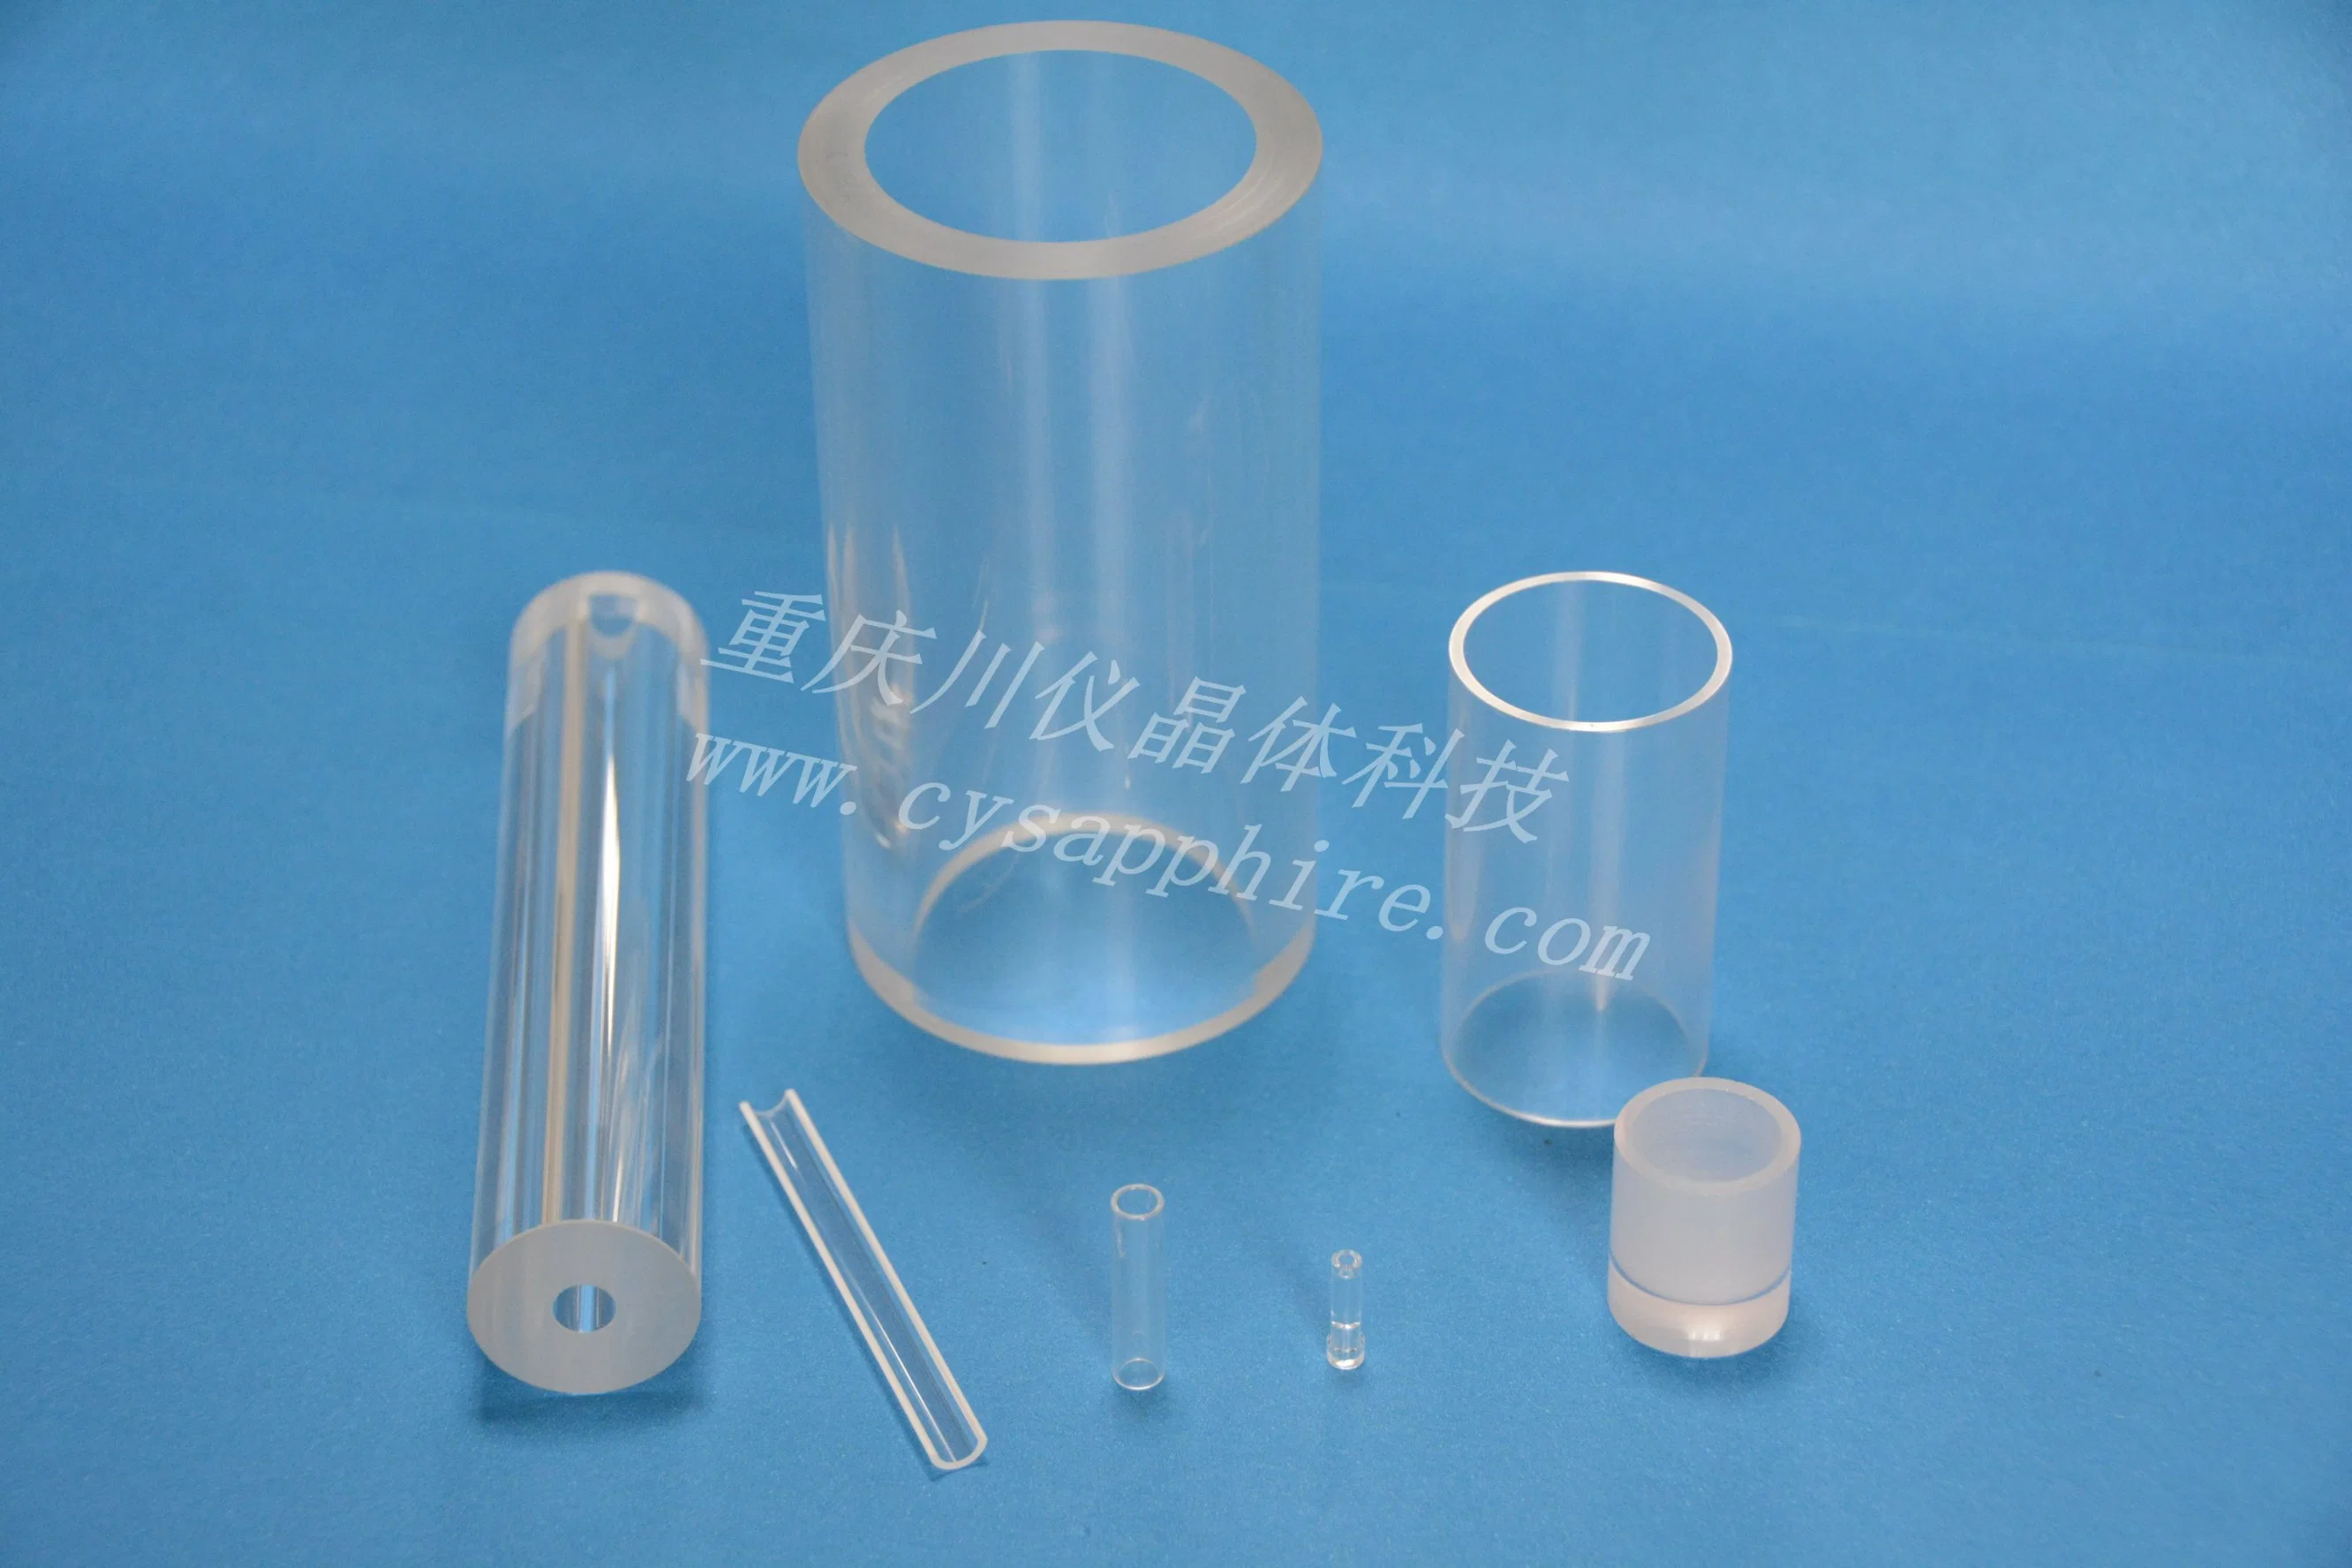 Fabriqué en Chine, OEM d'usine de qualité optique avec de nombreuses tailles utilisées pour contrôler le flux de fenêtre en tube de saphir.